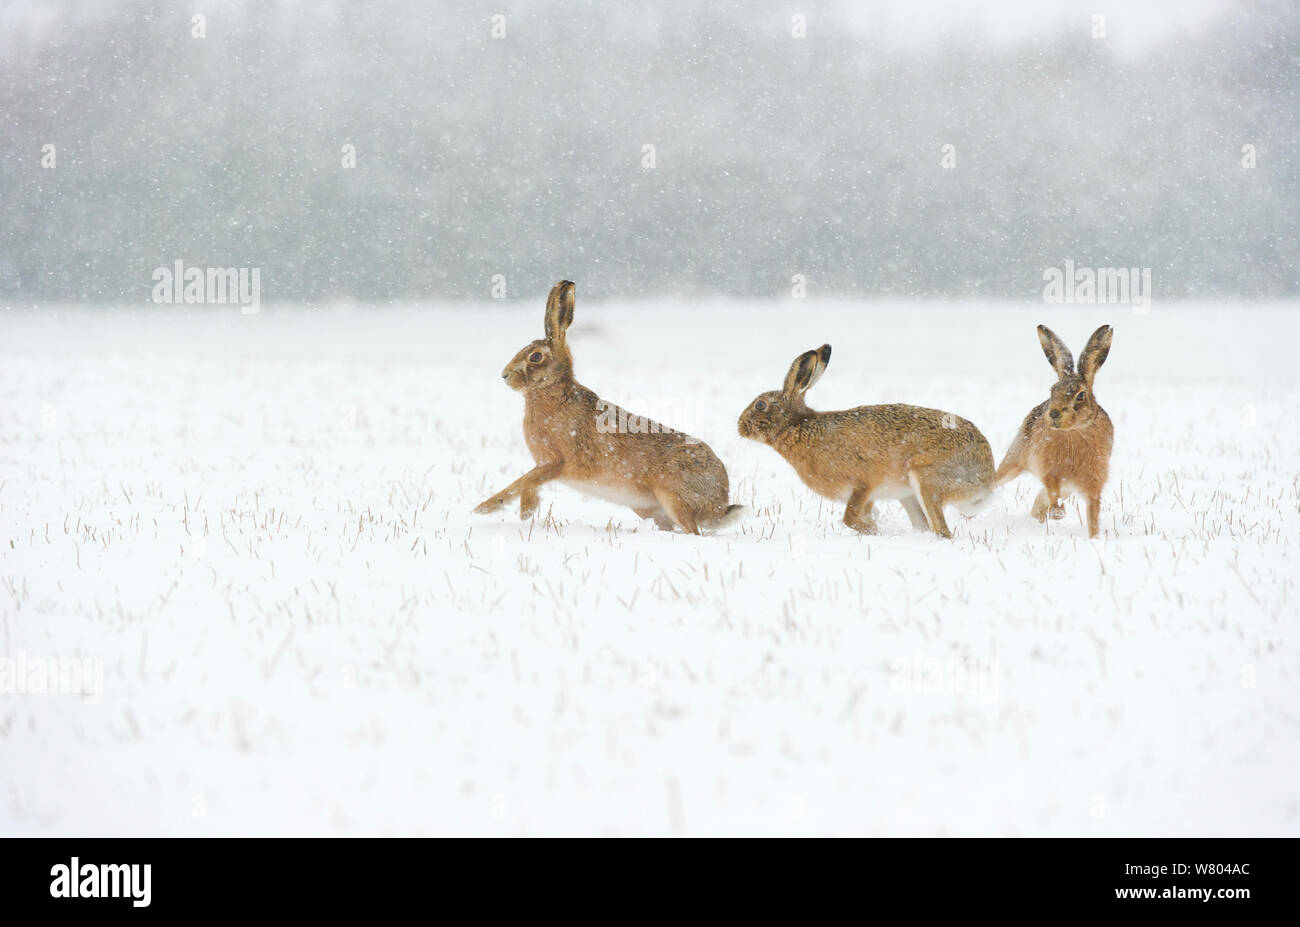 Lièvre brun (Lepus europaeus) paire de mâles (à droite) d'un séjour près d'une femelle réceptive potentiellement dans le champ couvert de neige pendant une chute de neige.Derbyshire, Royaume-Uni. Banque D'Images